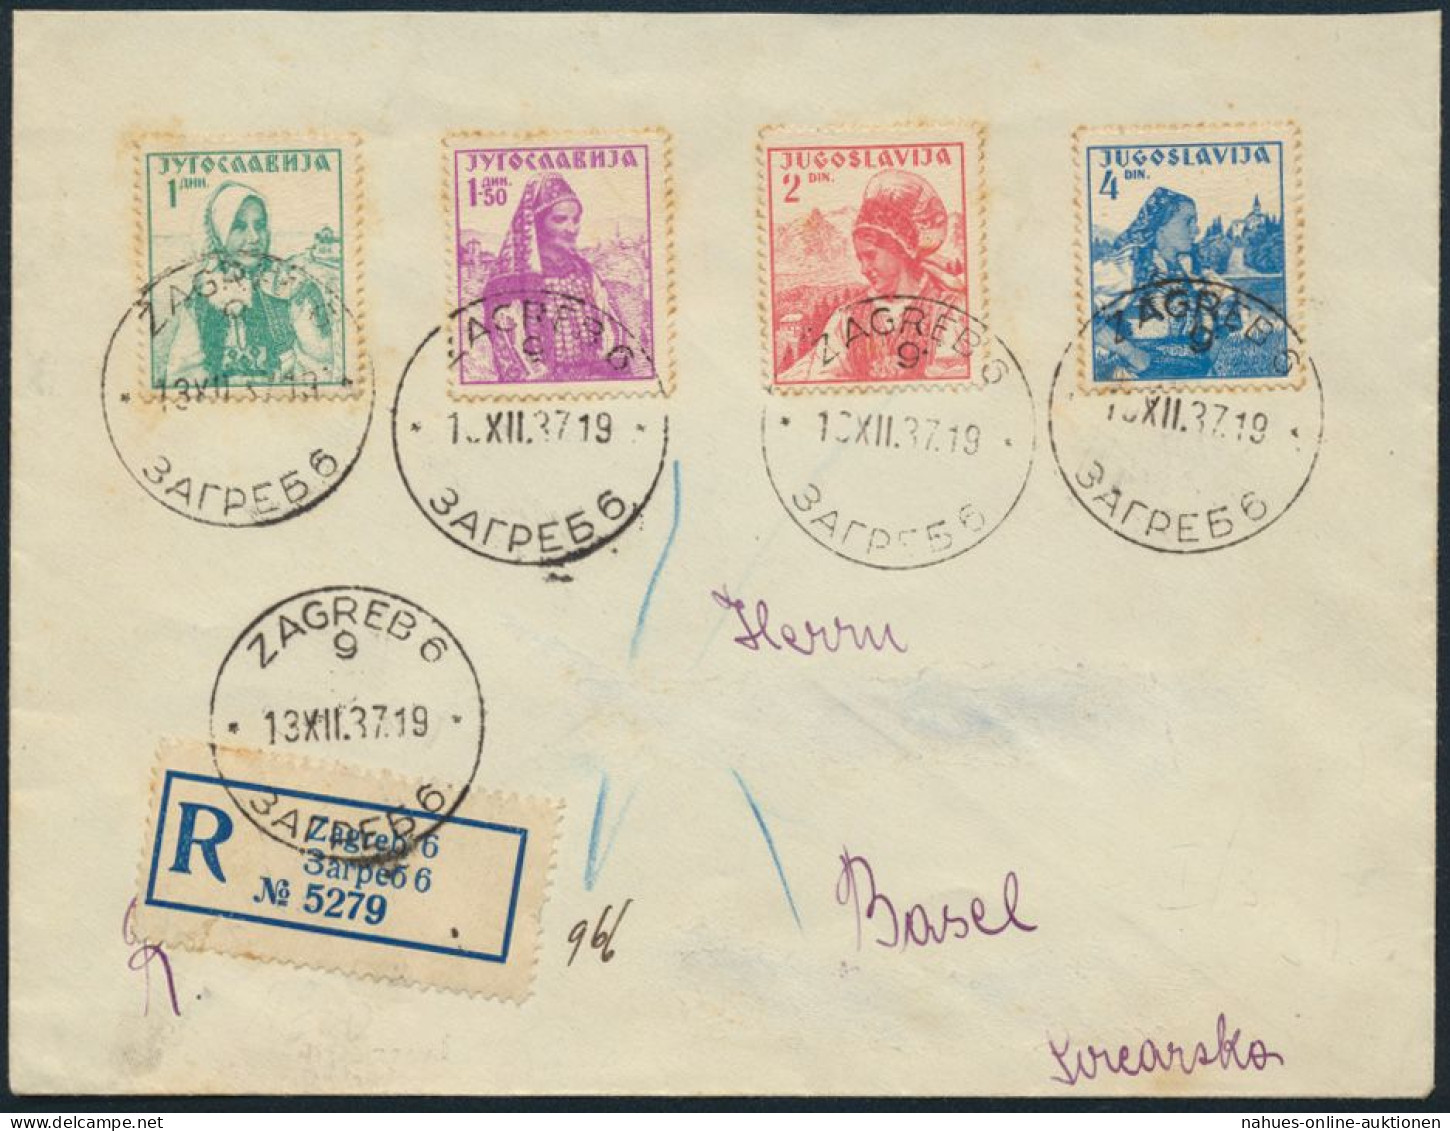 Jugoslawien R-Brief MIF Blockeinzelmarken 336-339 Zagreb Nach Basel - Covers & Documents